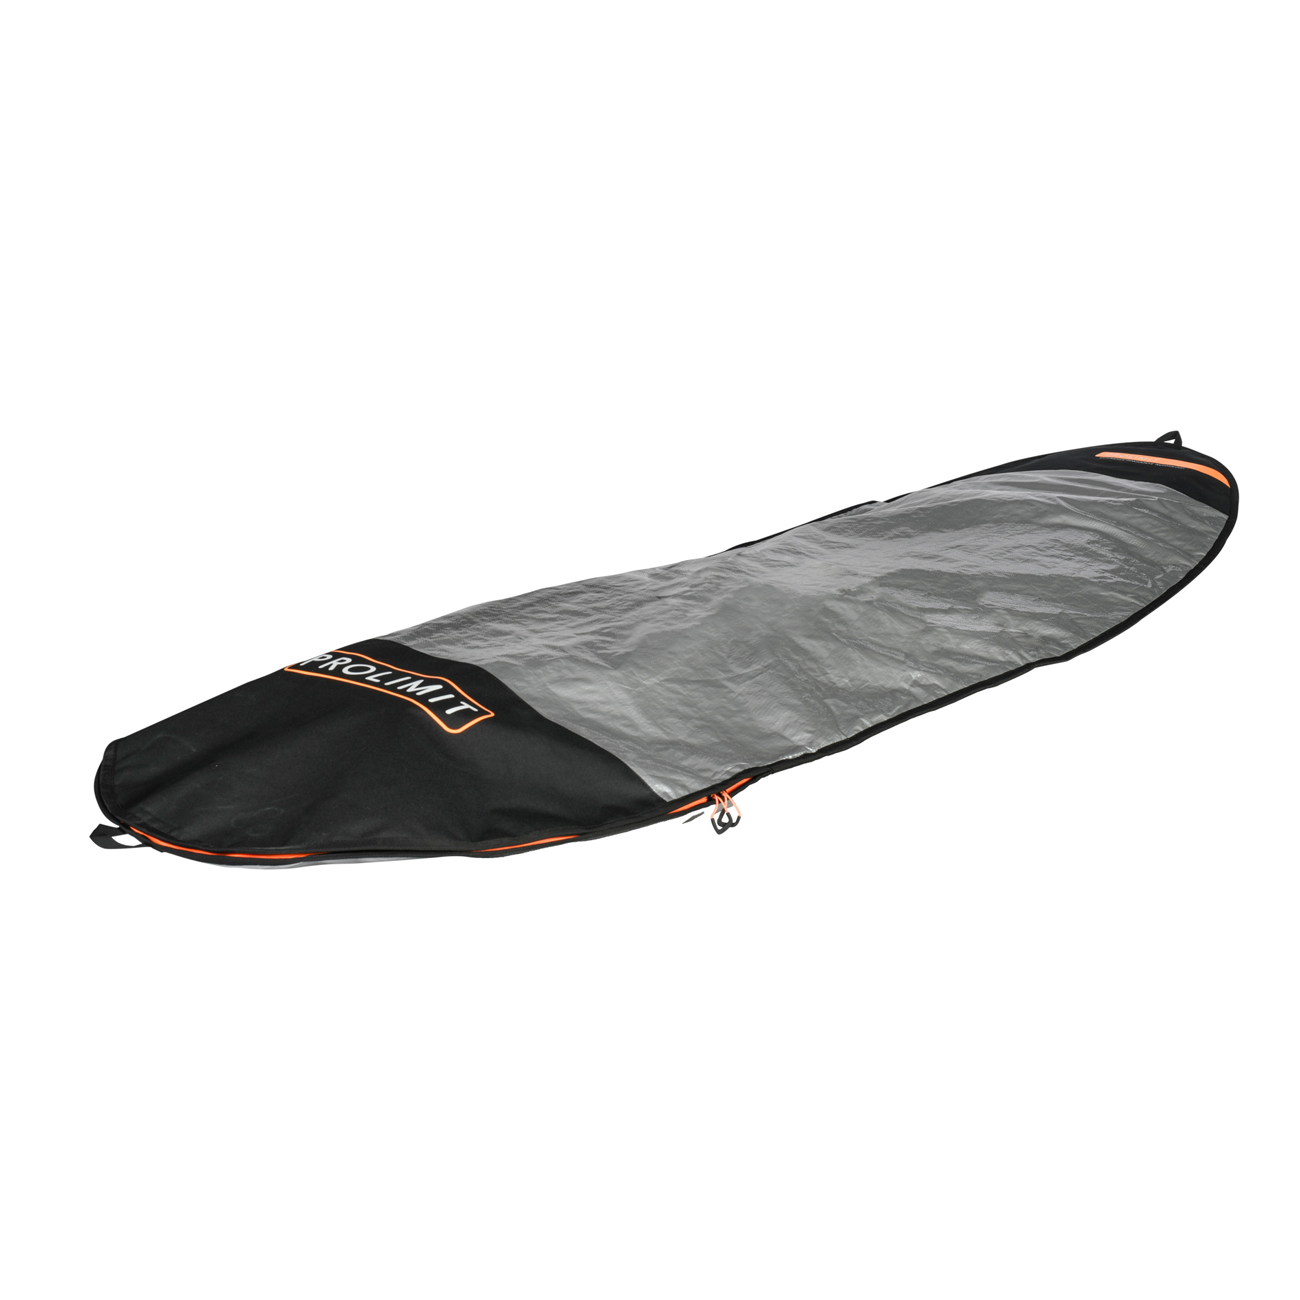 Concept X Boardbag Windsurf Surf Bag Surfbrett Tasche Rocket 242 x 73 cm 